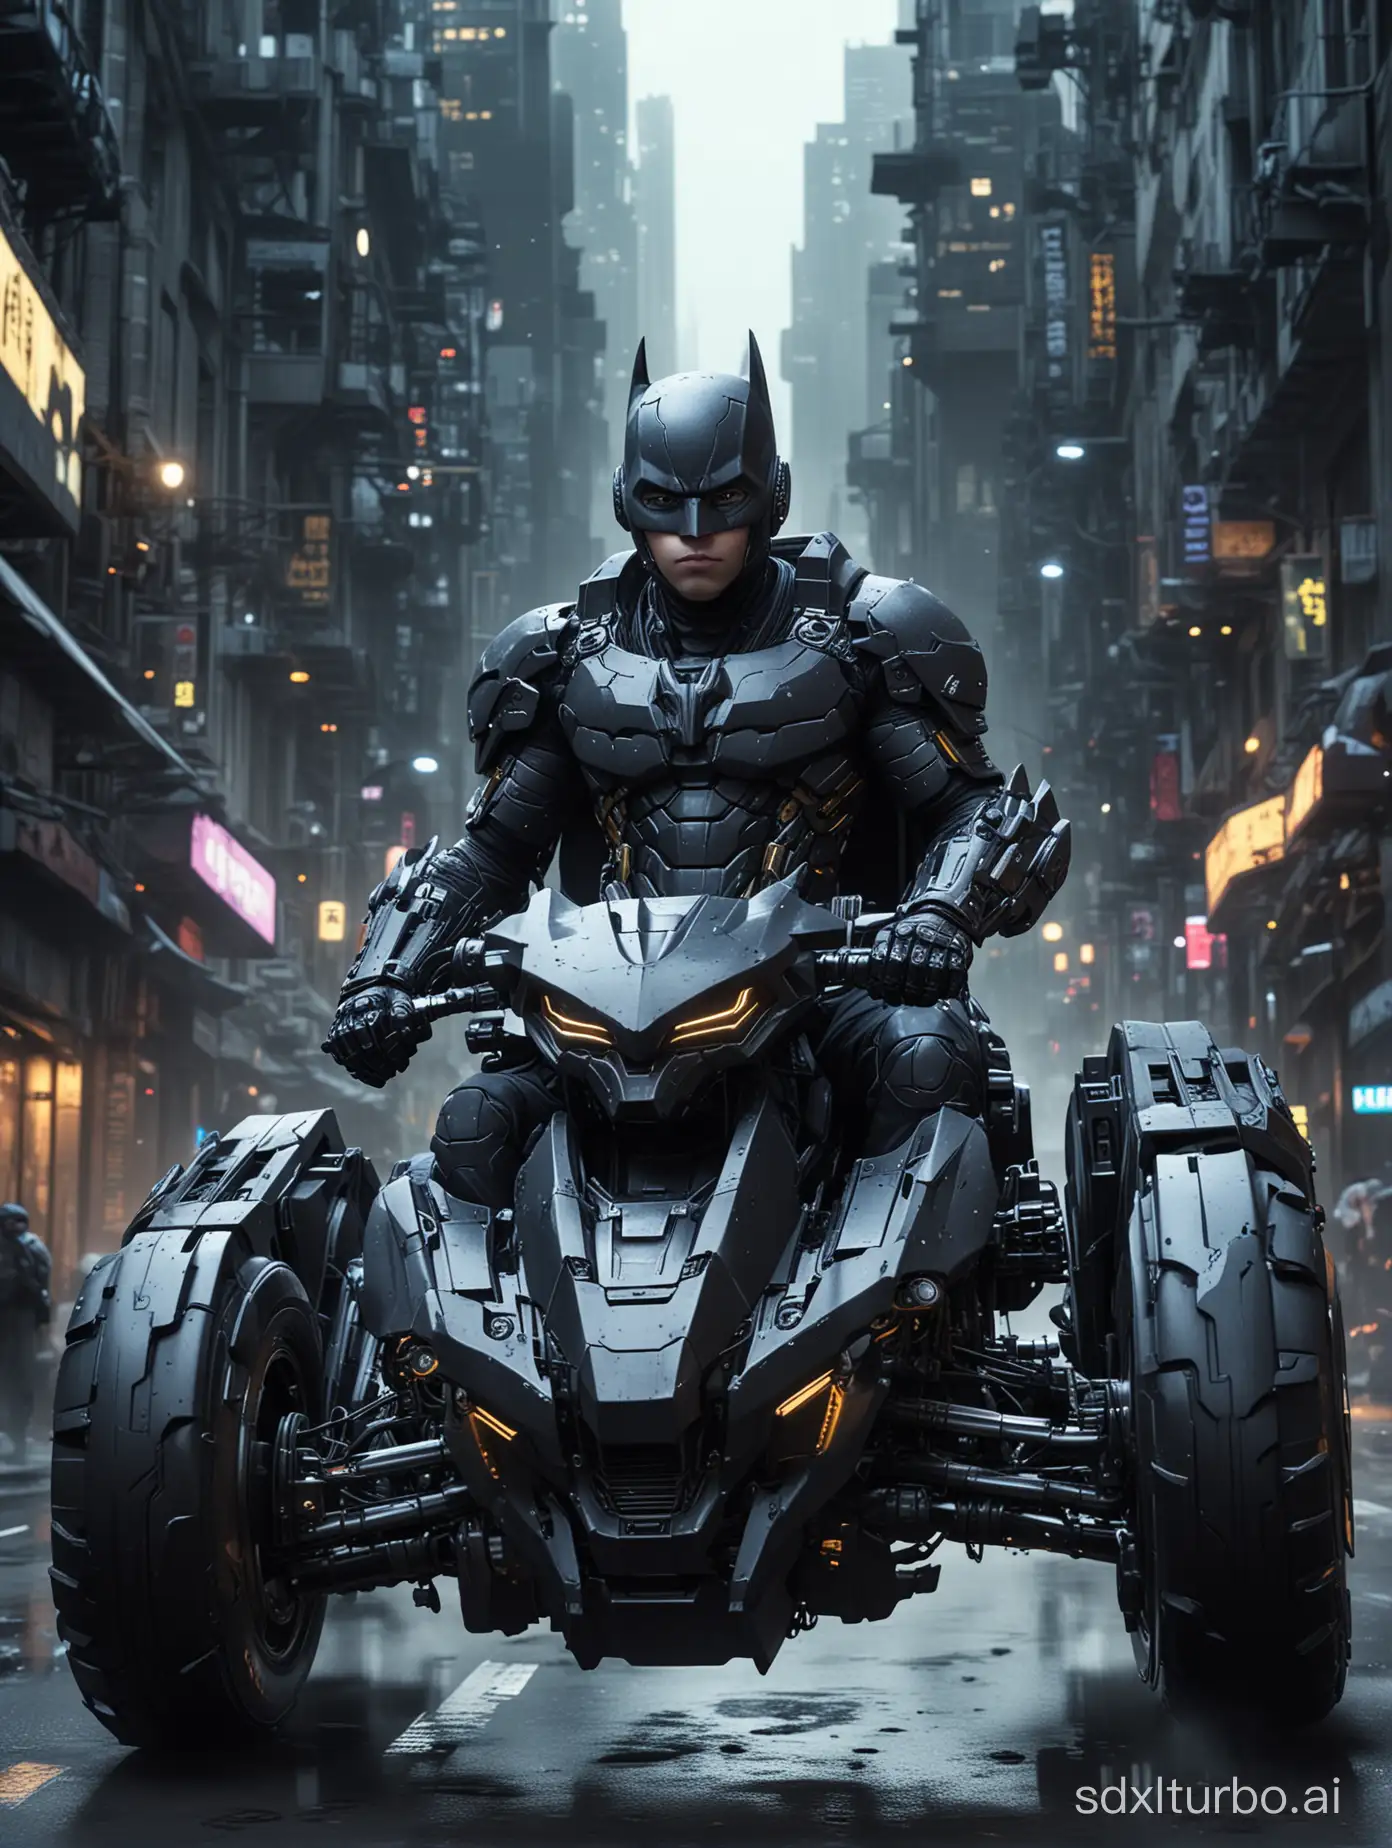 Futuristic-Child-in-Batman-Armor-Rides-Speedy-Mecha-Car-Through-Cyber-Urban-Night